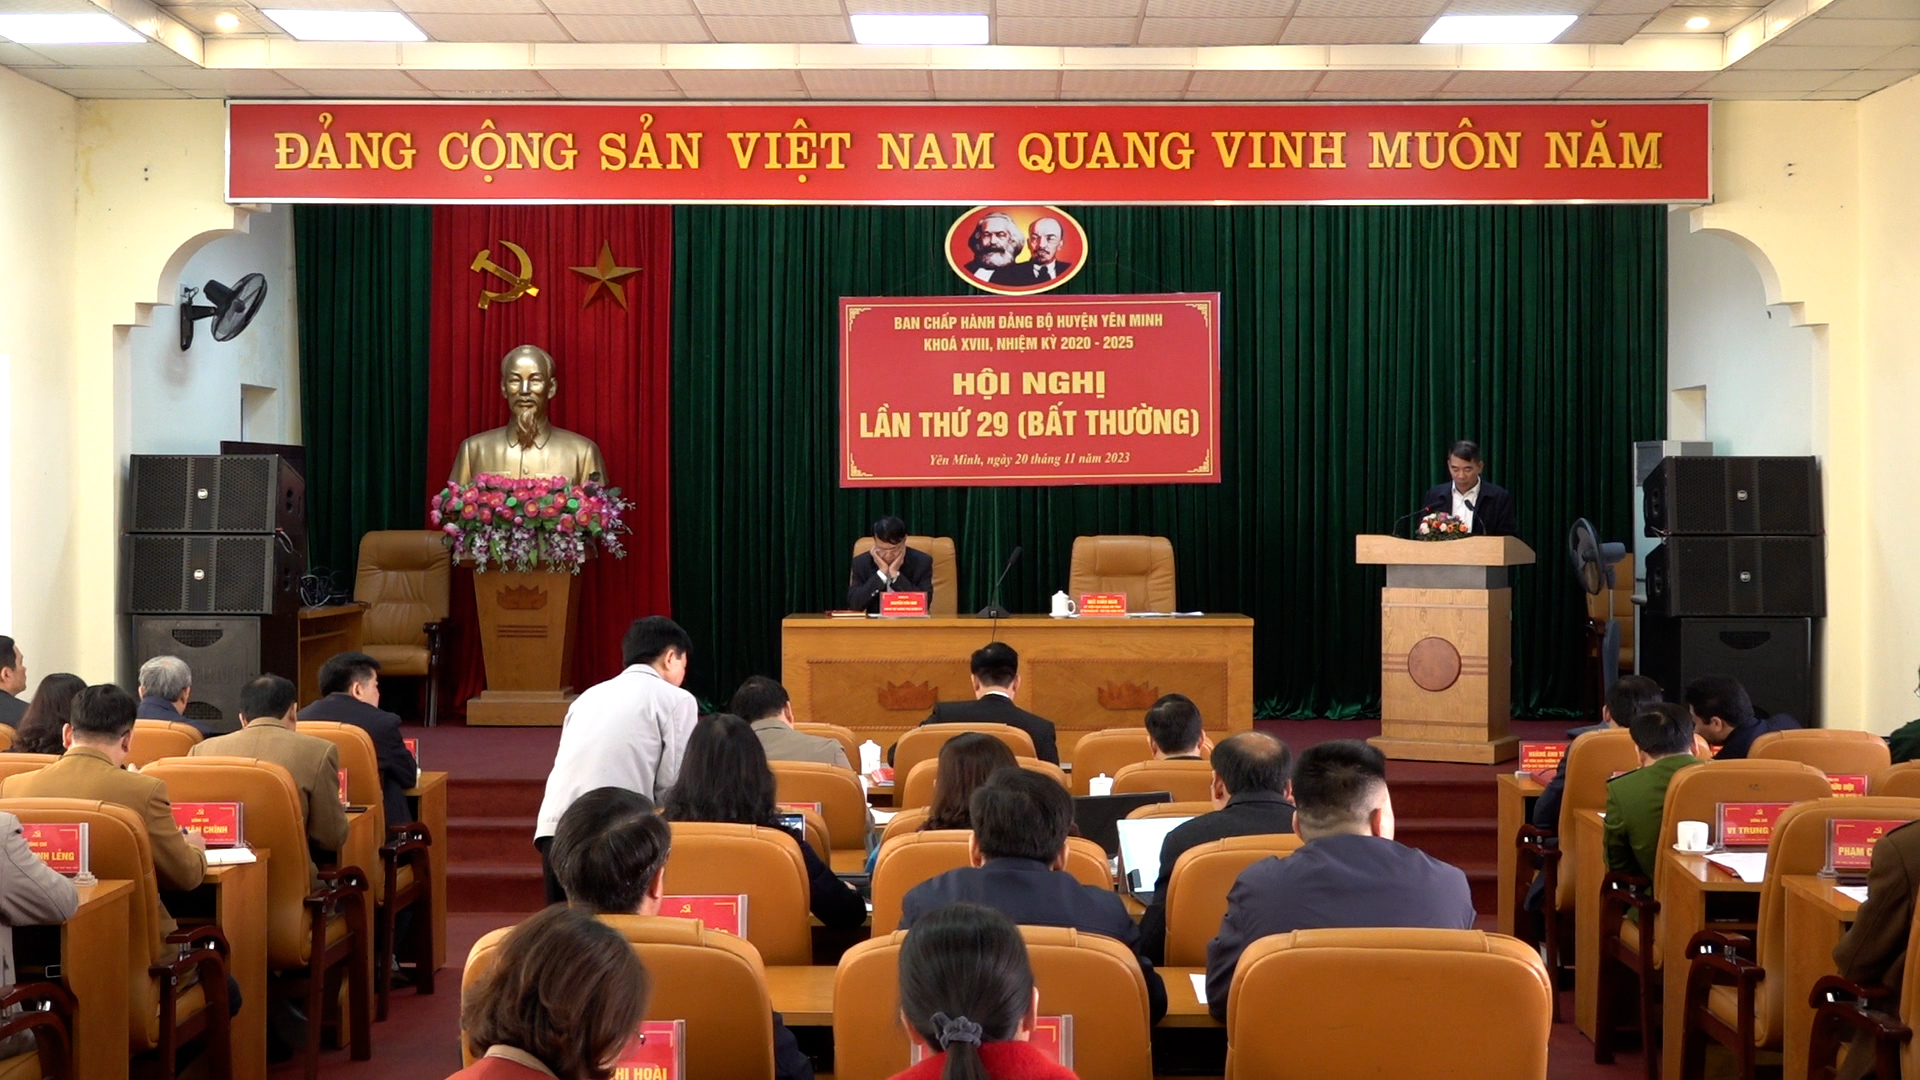 Hội nghị BCH Đảng bộ huyện Yên Minh lần thứ 29 (Bất thường)